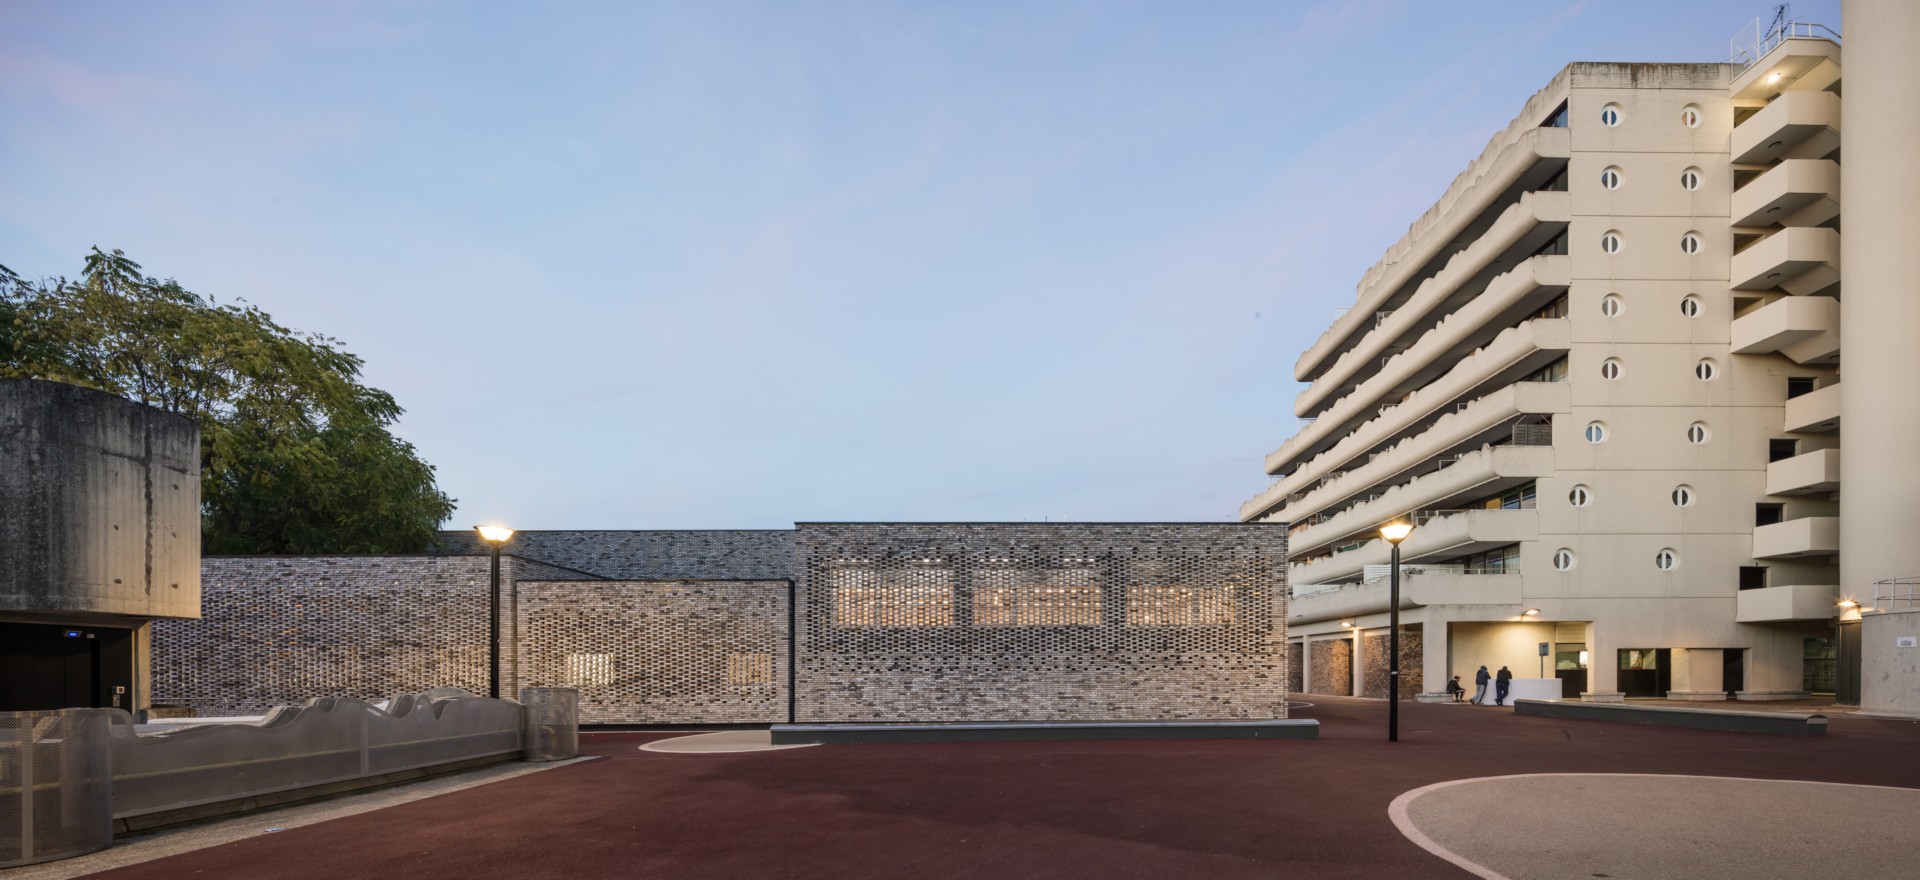 Opus 5 Architectes completa um novo centro cultural numa quinta